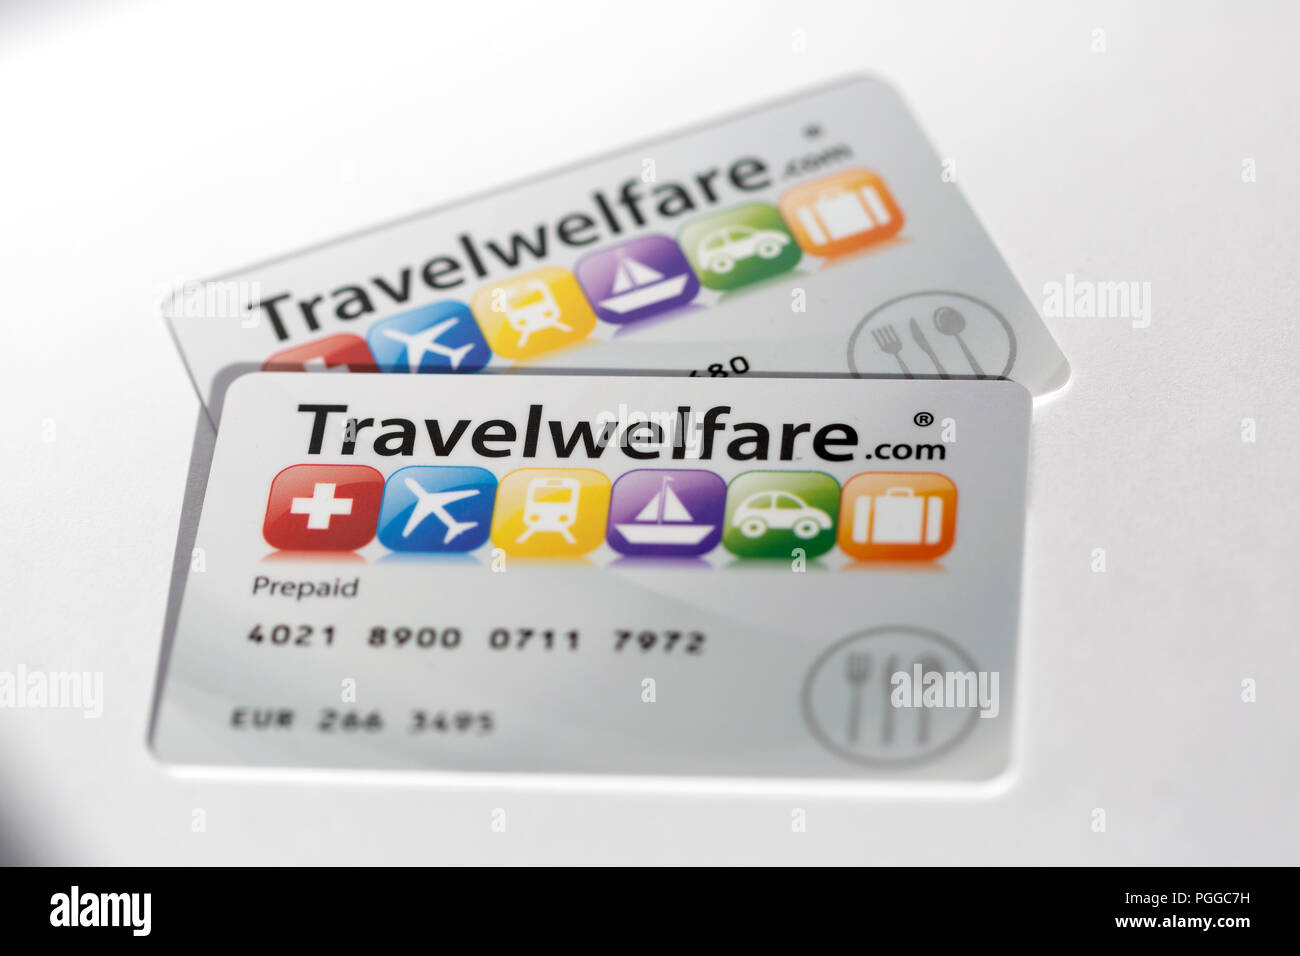 Viajes tarjetas Bienestar Bienestar.travel ofrecen visa autorizada 'tarjeta regalo' vales estilo incorporando la tecnología de banda magnética. Foto de stock